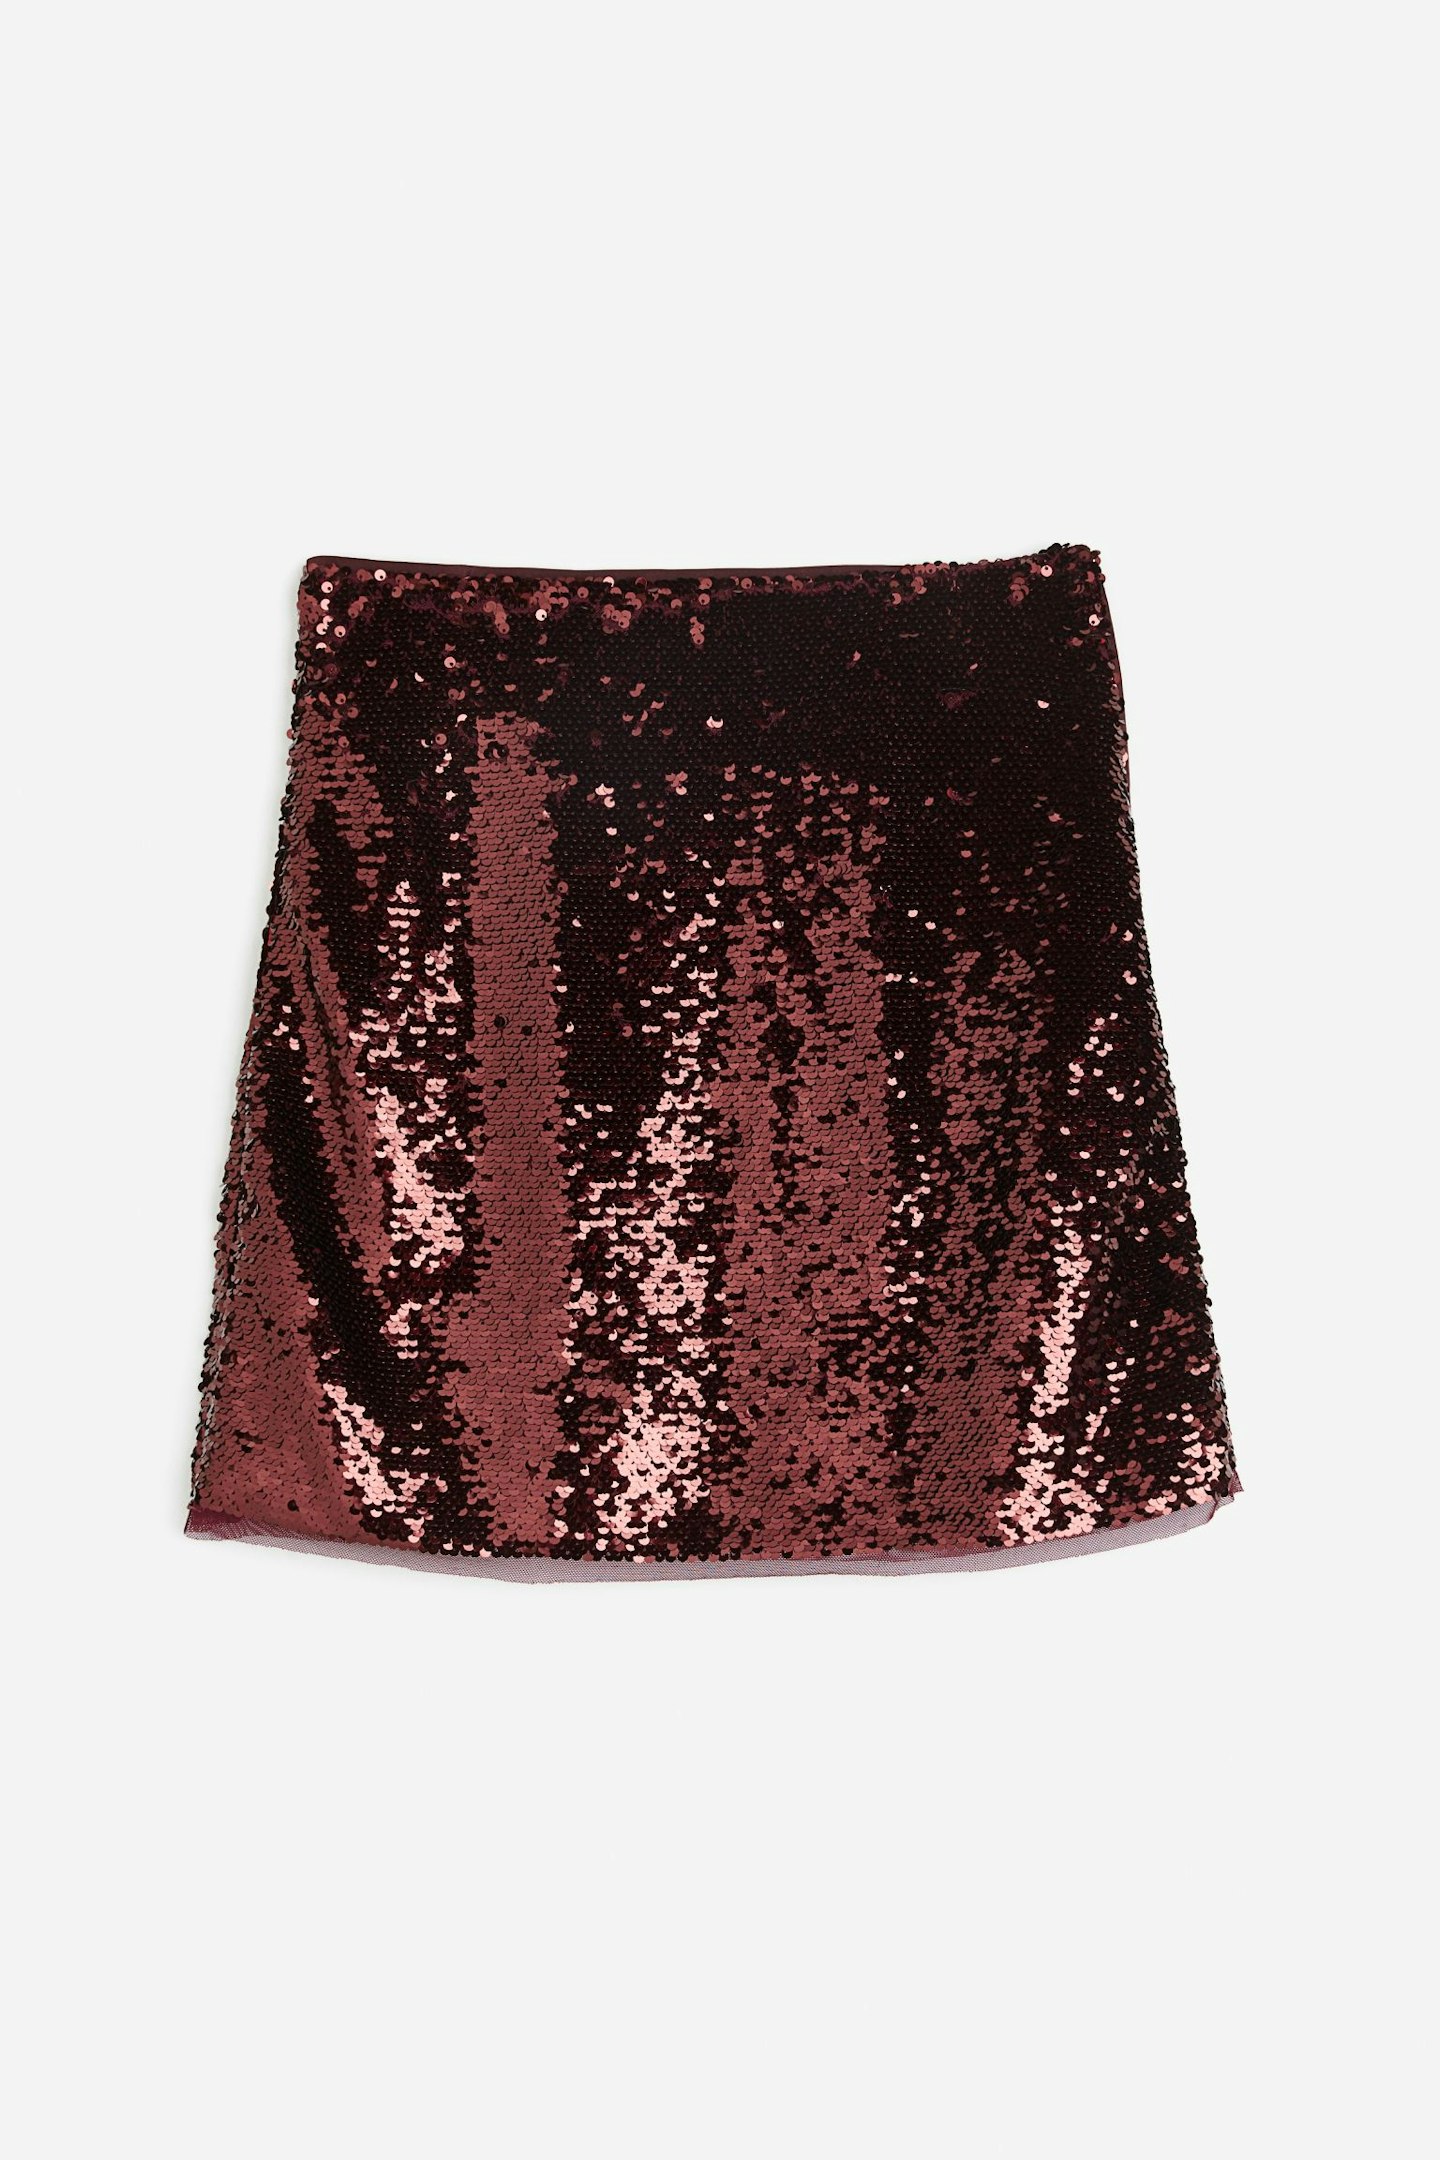 H&M red sequin mini skirt